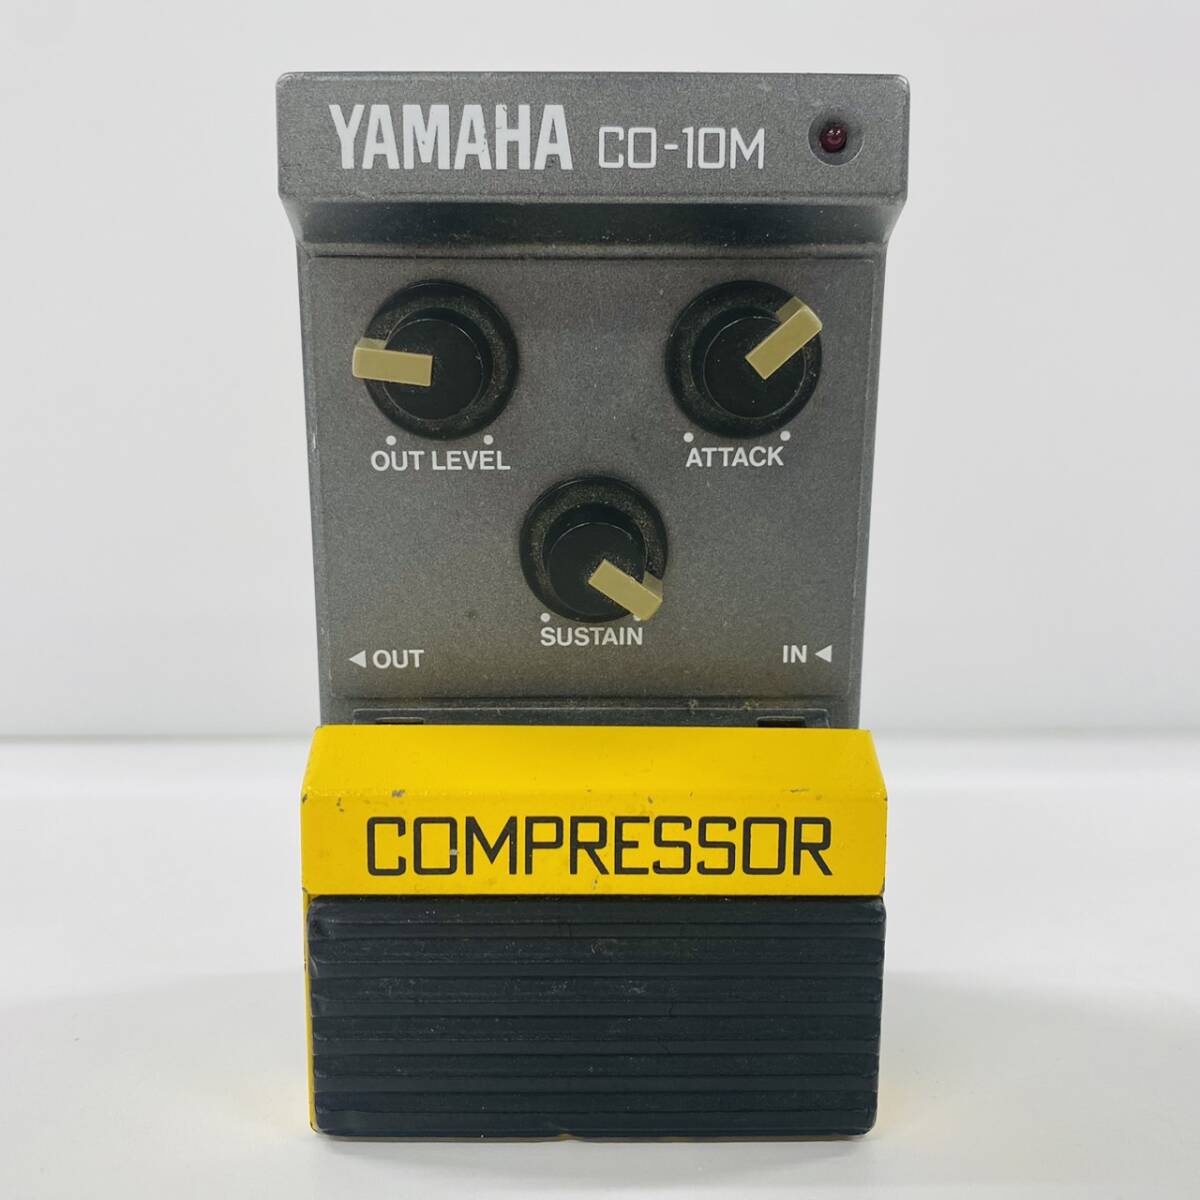 M284-Z12-292 YAMAHA Yamaha COMPRESSOR компрессор CO-10M корпус эффектор звук устройство желтый цвет музыка гитара звук ②